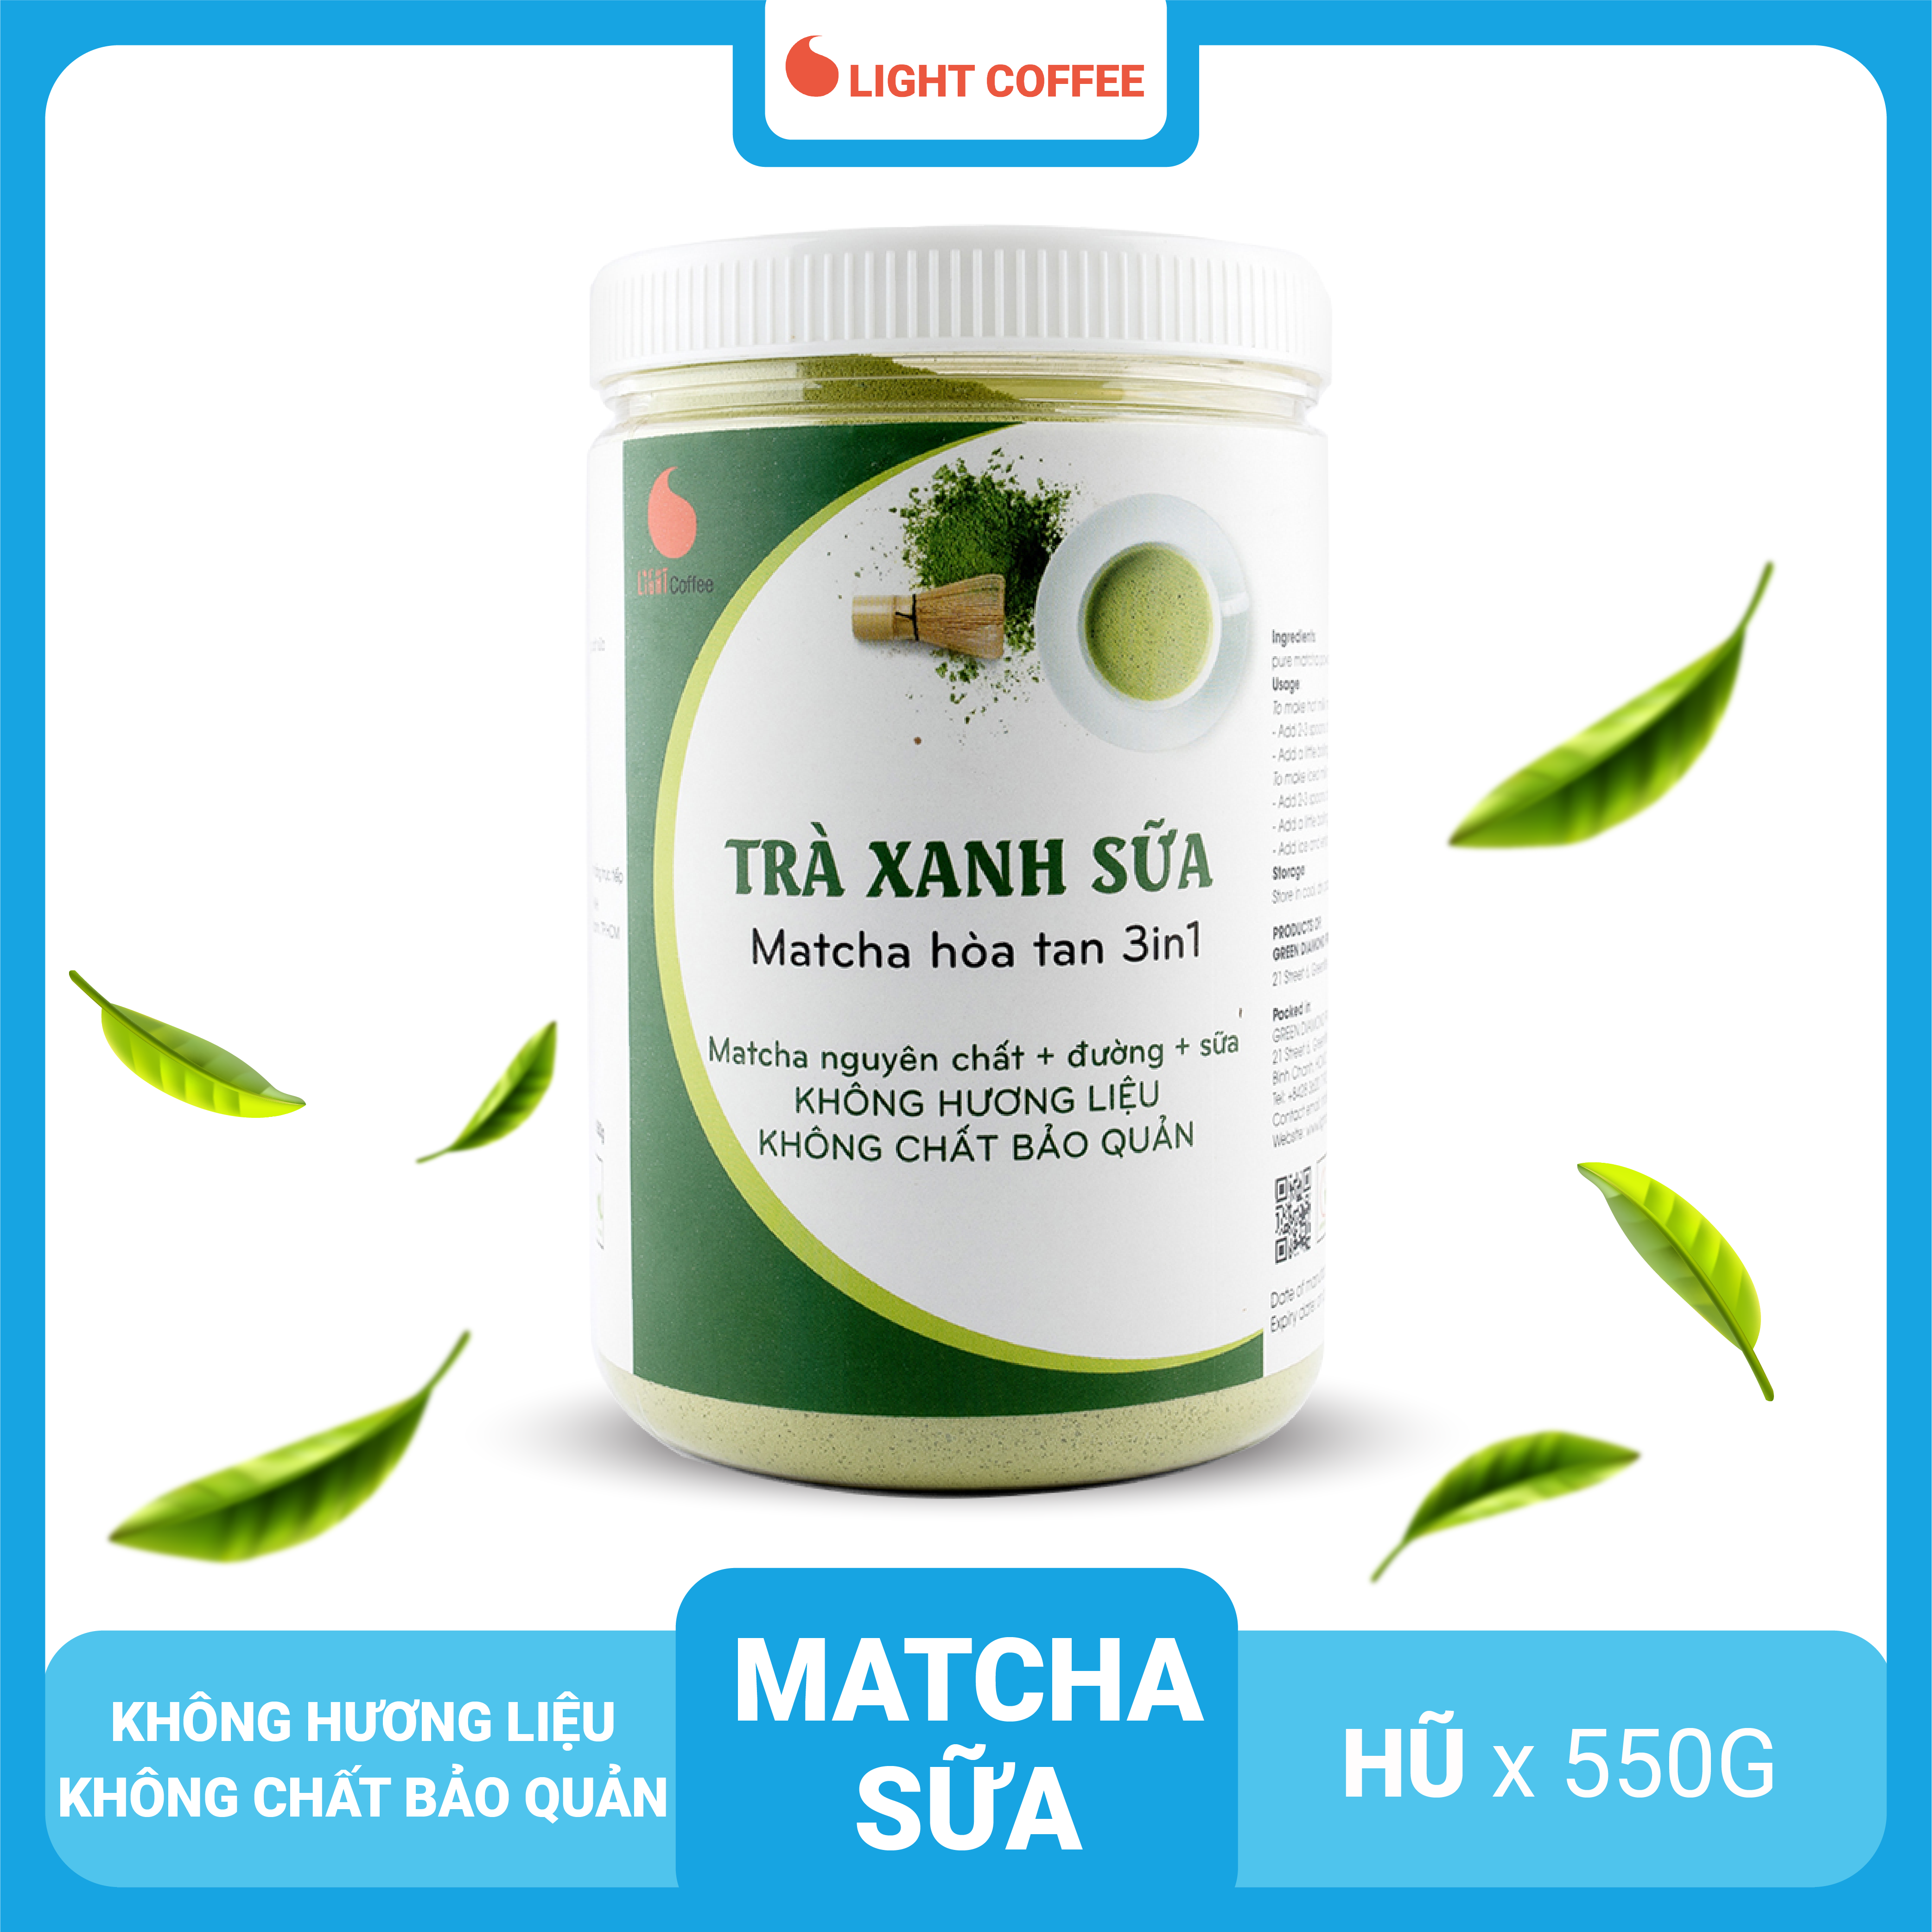 Bột trà xanh sữa 3in1, matcha xuất xứ Nhật Bản, hũ 550g, từ nhà sản xuất Light Coffee